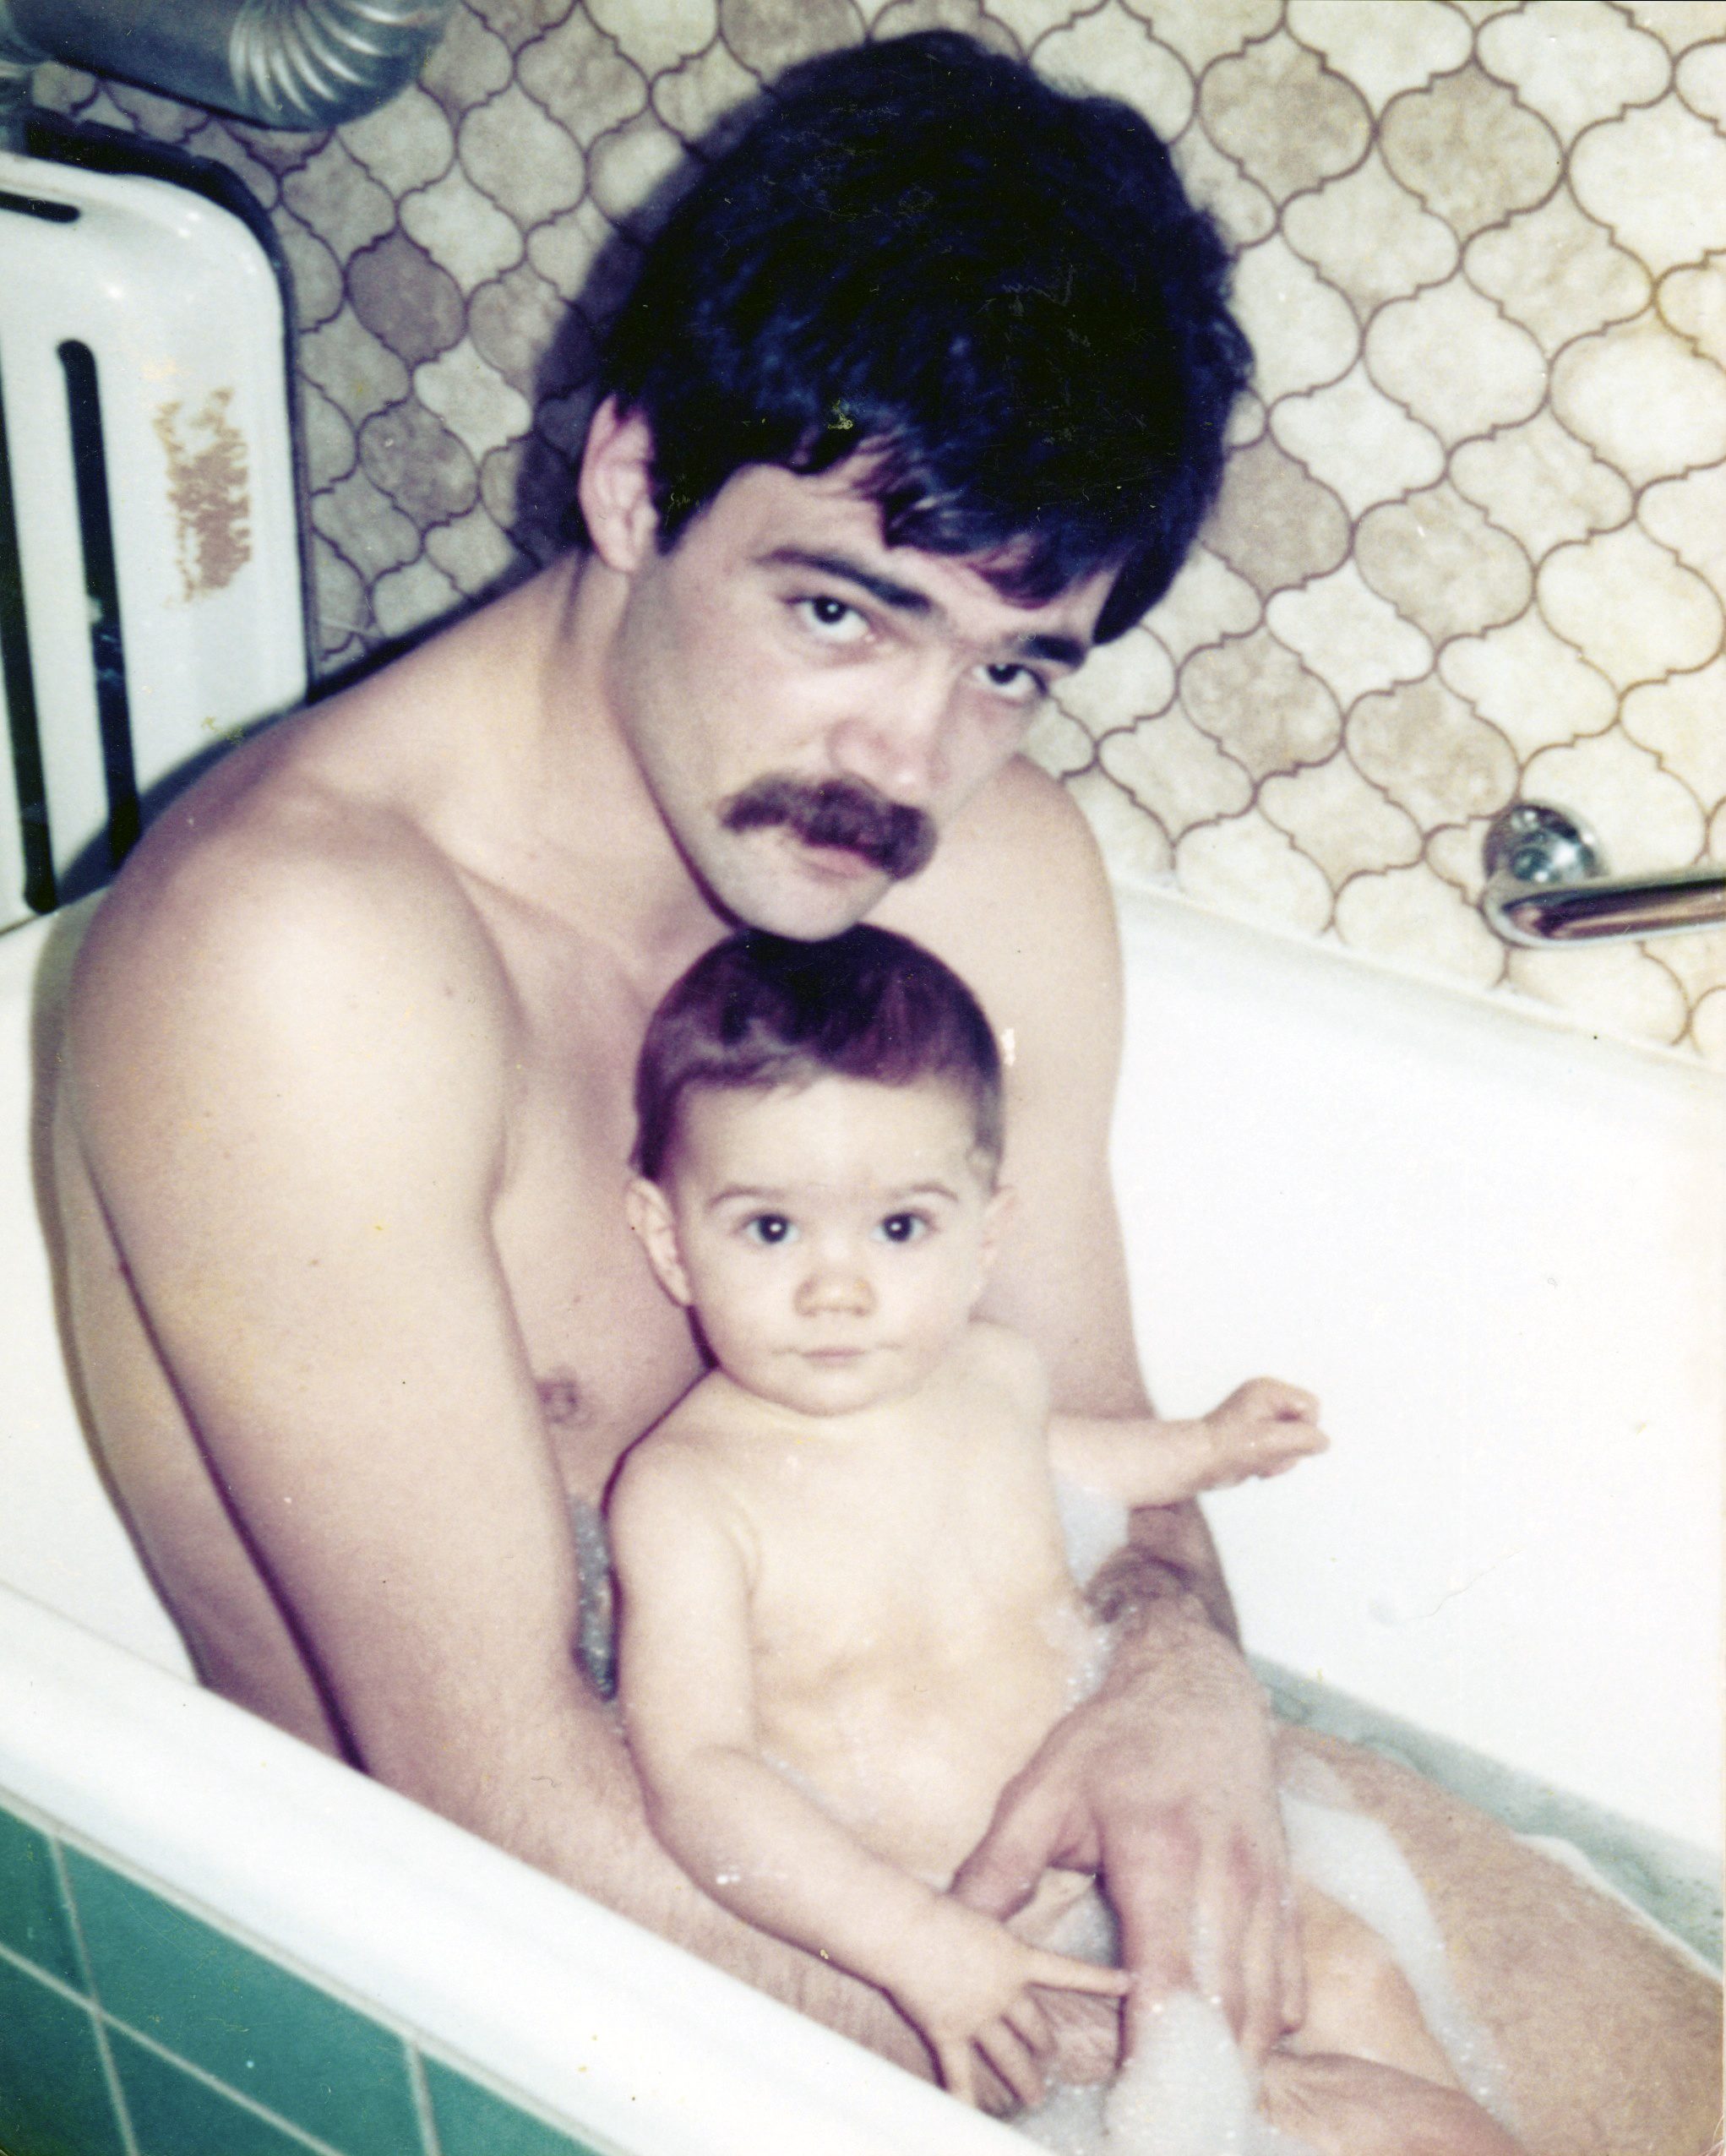 Vater und Sohn in der Badewanne.